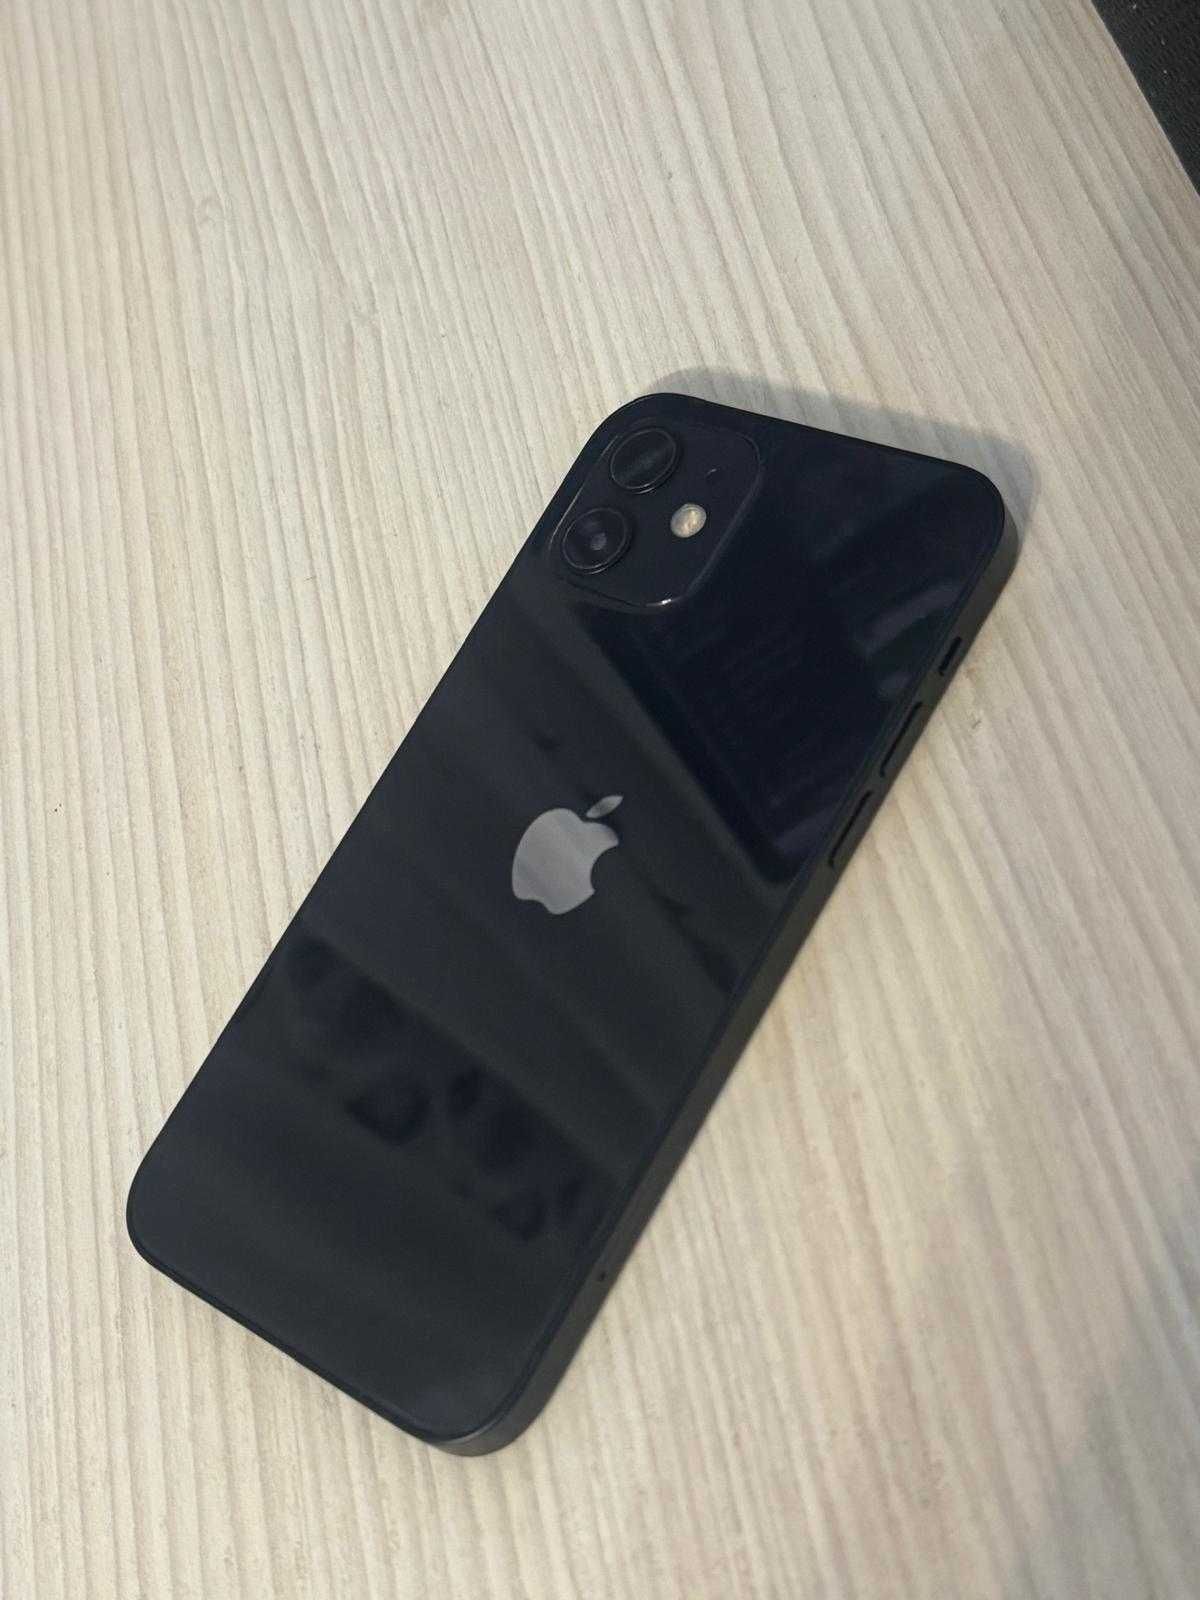 iPhone 12 negru 128 gb 86 baterie